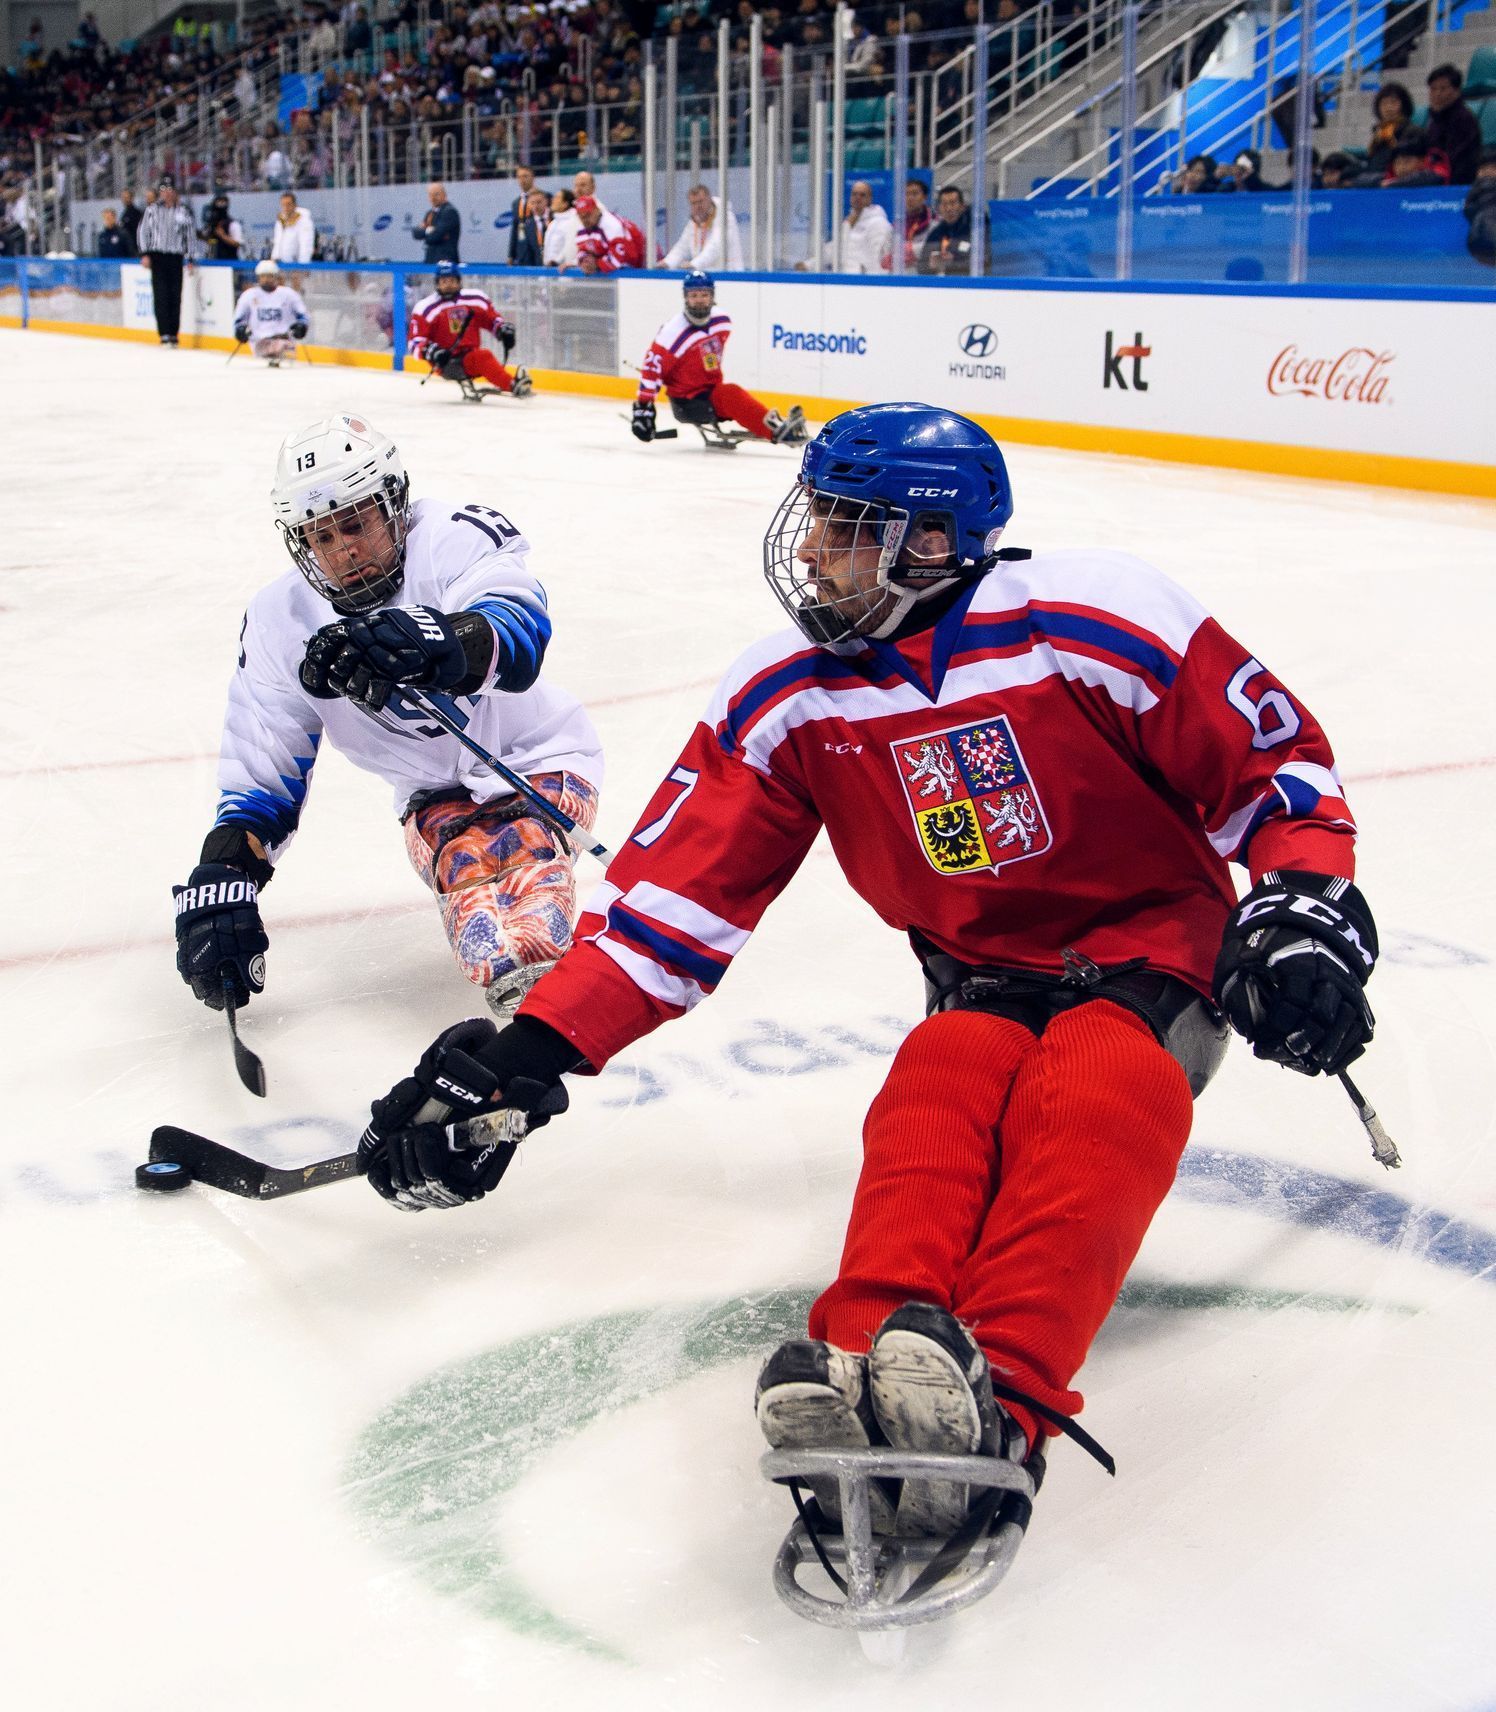 Čeští sledge hokejisté na paralympiádě 2018